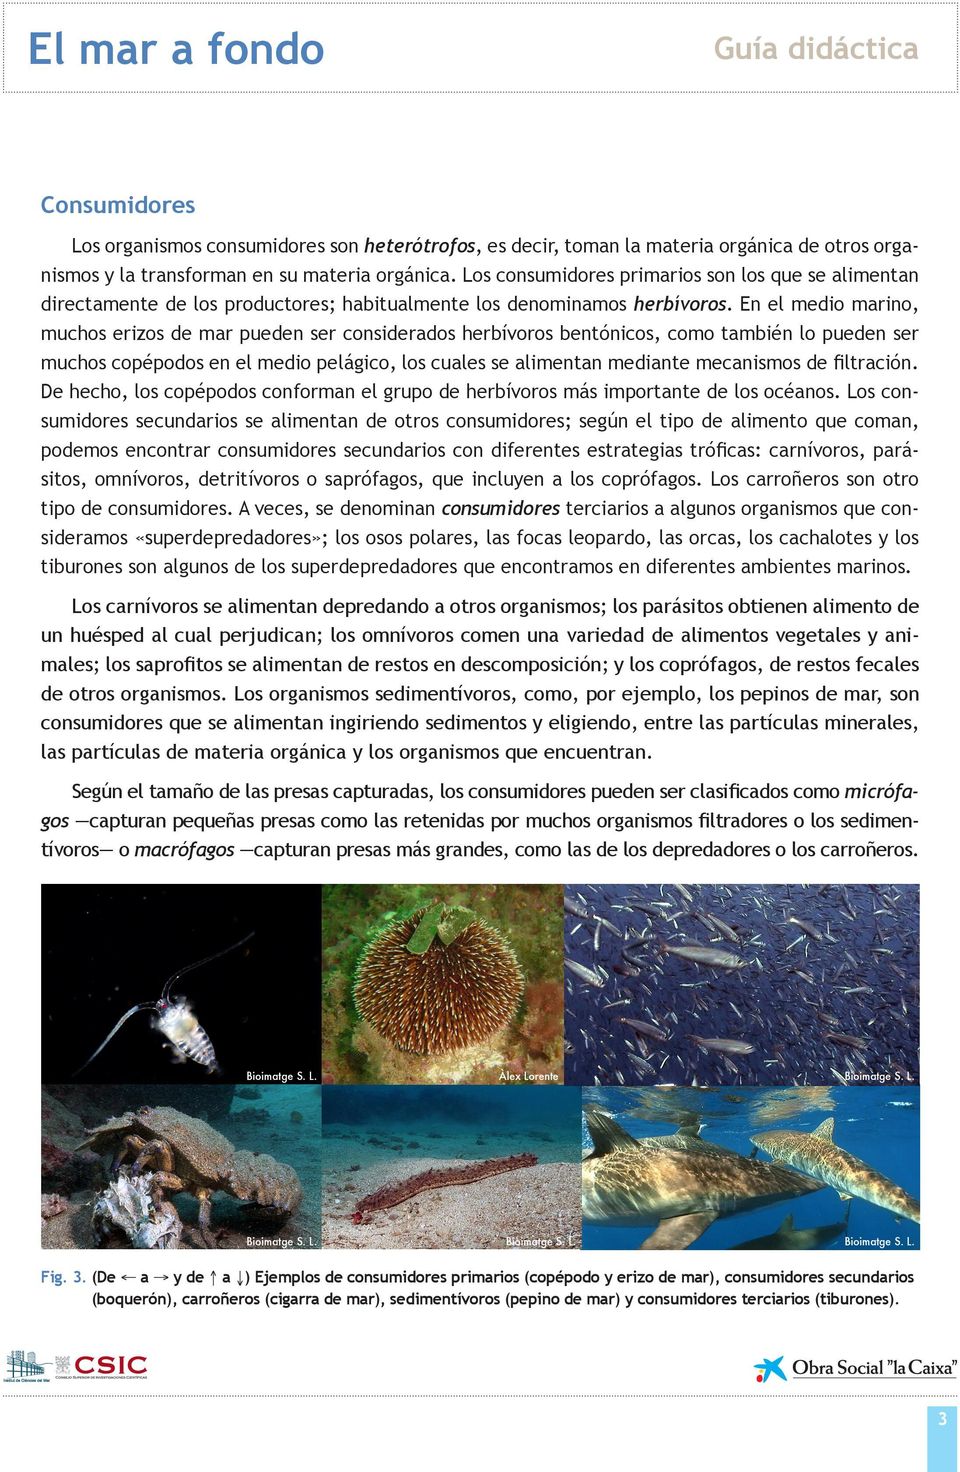 En el medio marino, muchos erizos de mar pueden ser considerados herbívoros bentónicos, como también lo pueden ser muchos copépodos en el medio pelágico, los cuales se alimentan mediante mecanismos